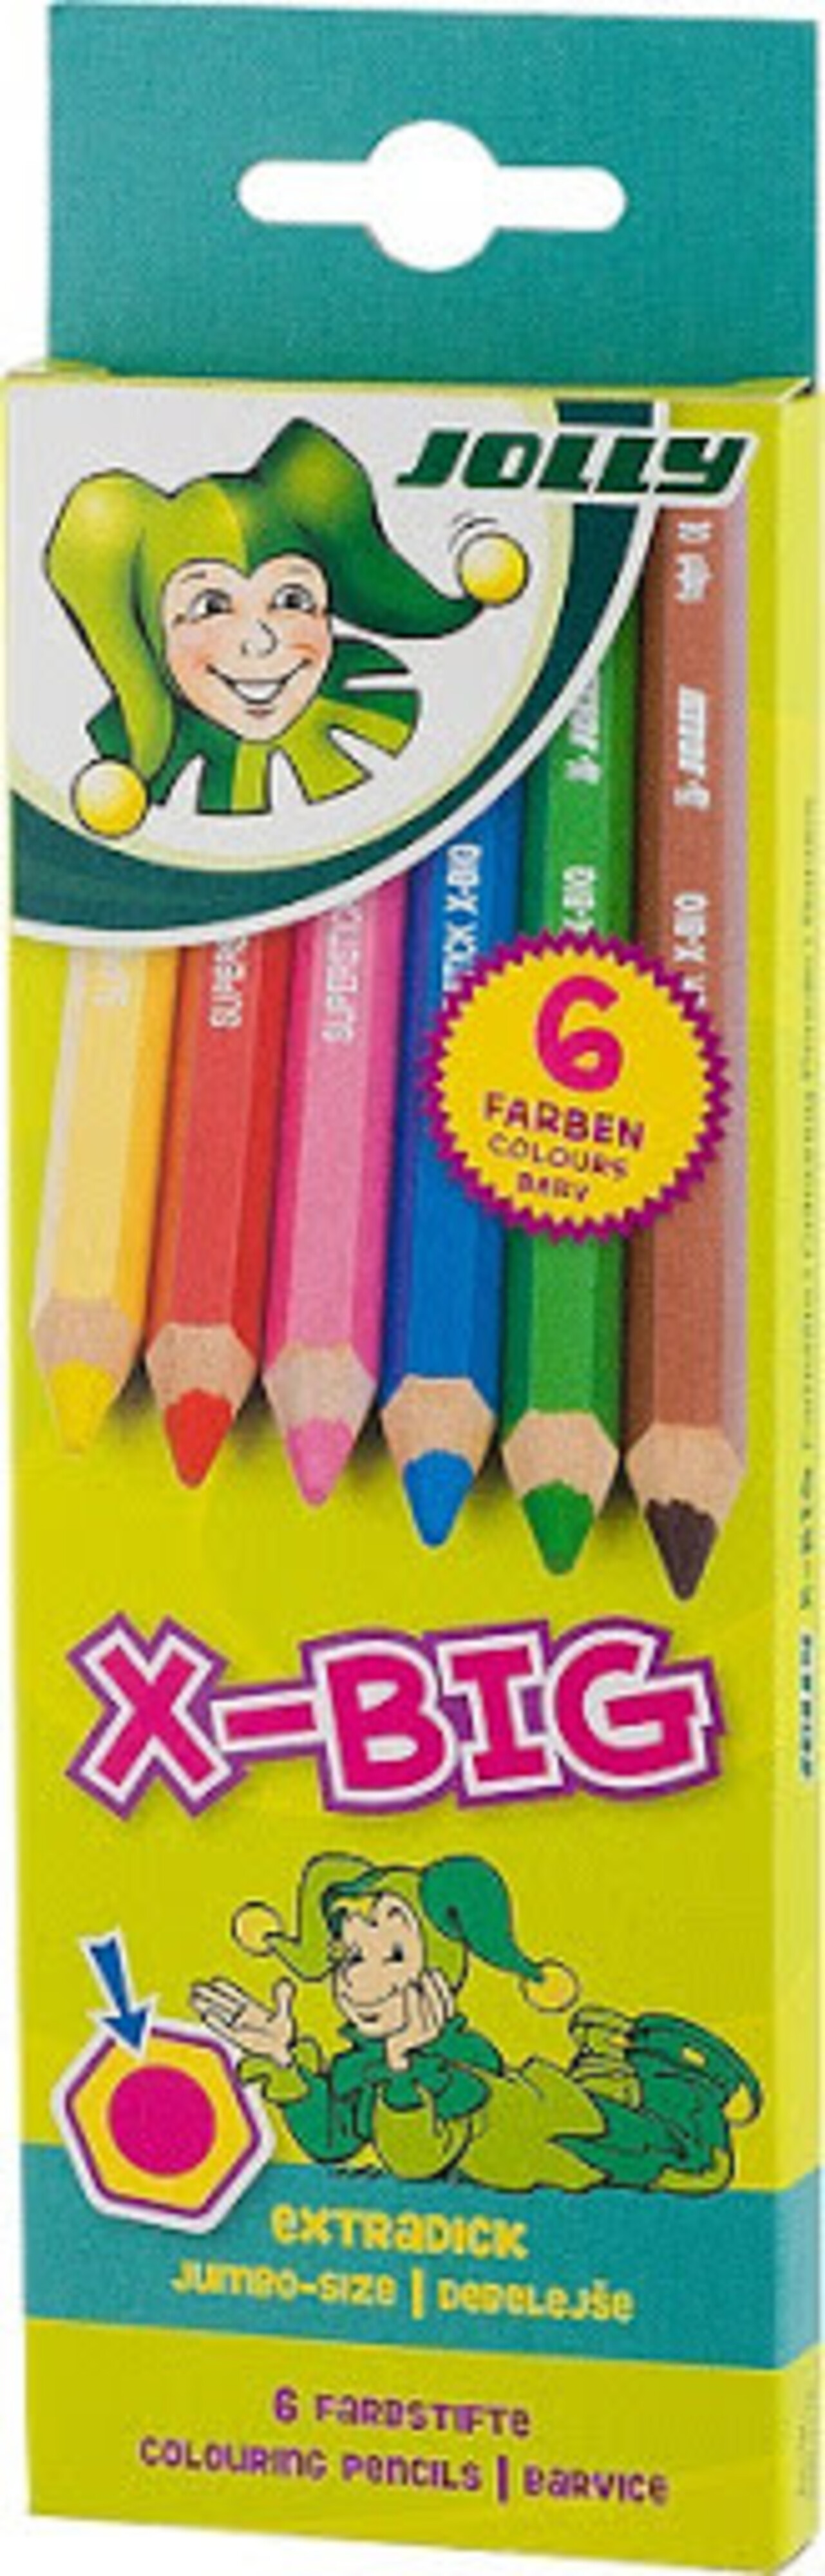 https://cdn.shoplightspeed.com/shops/641268/files/34125350/1500x4000x3/trussart-jolly-superstick-color-pencil-sets.jpg